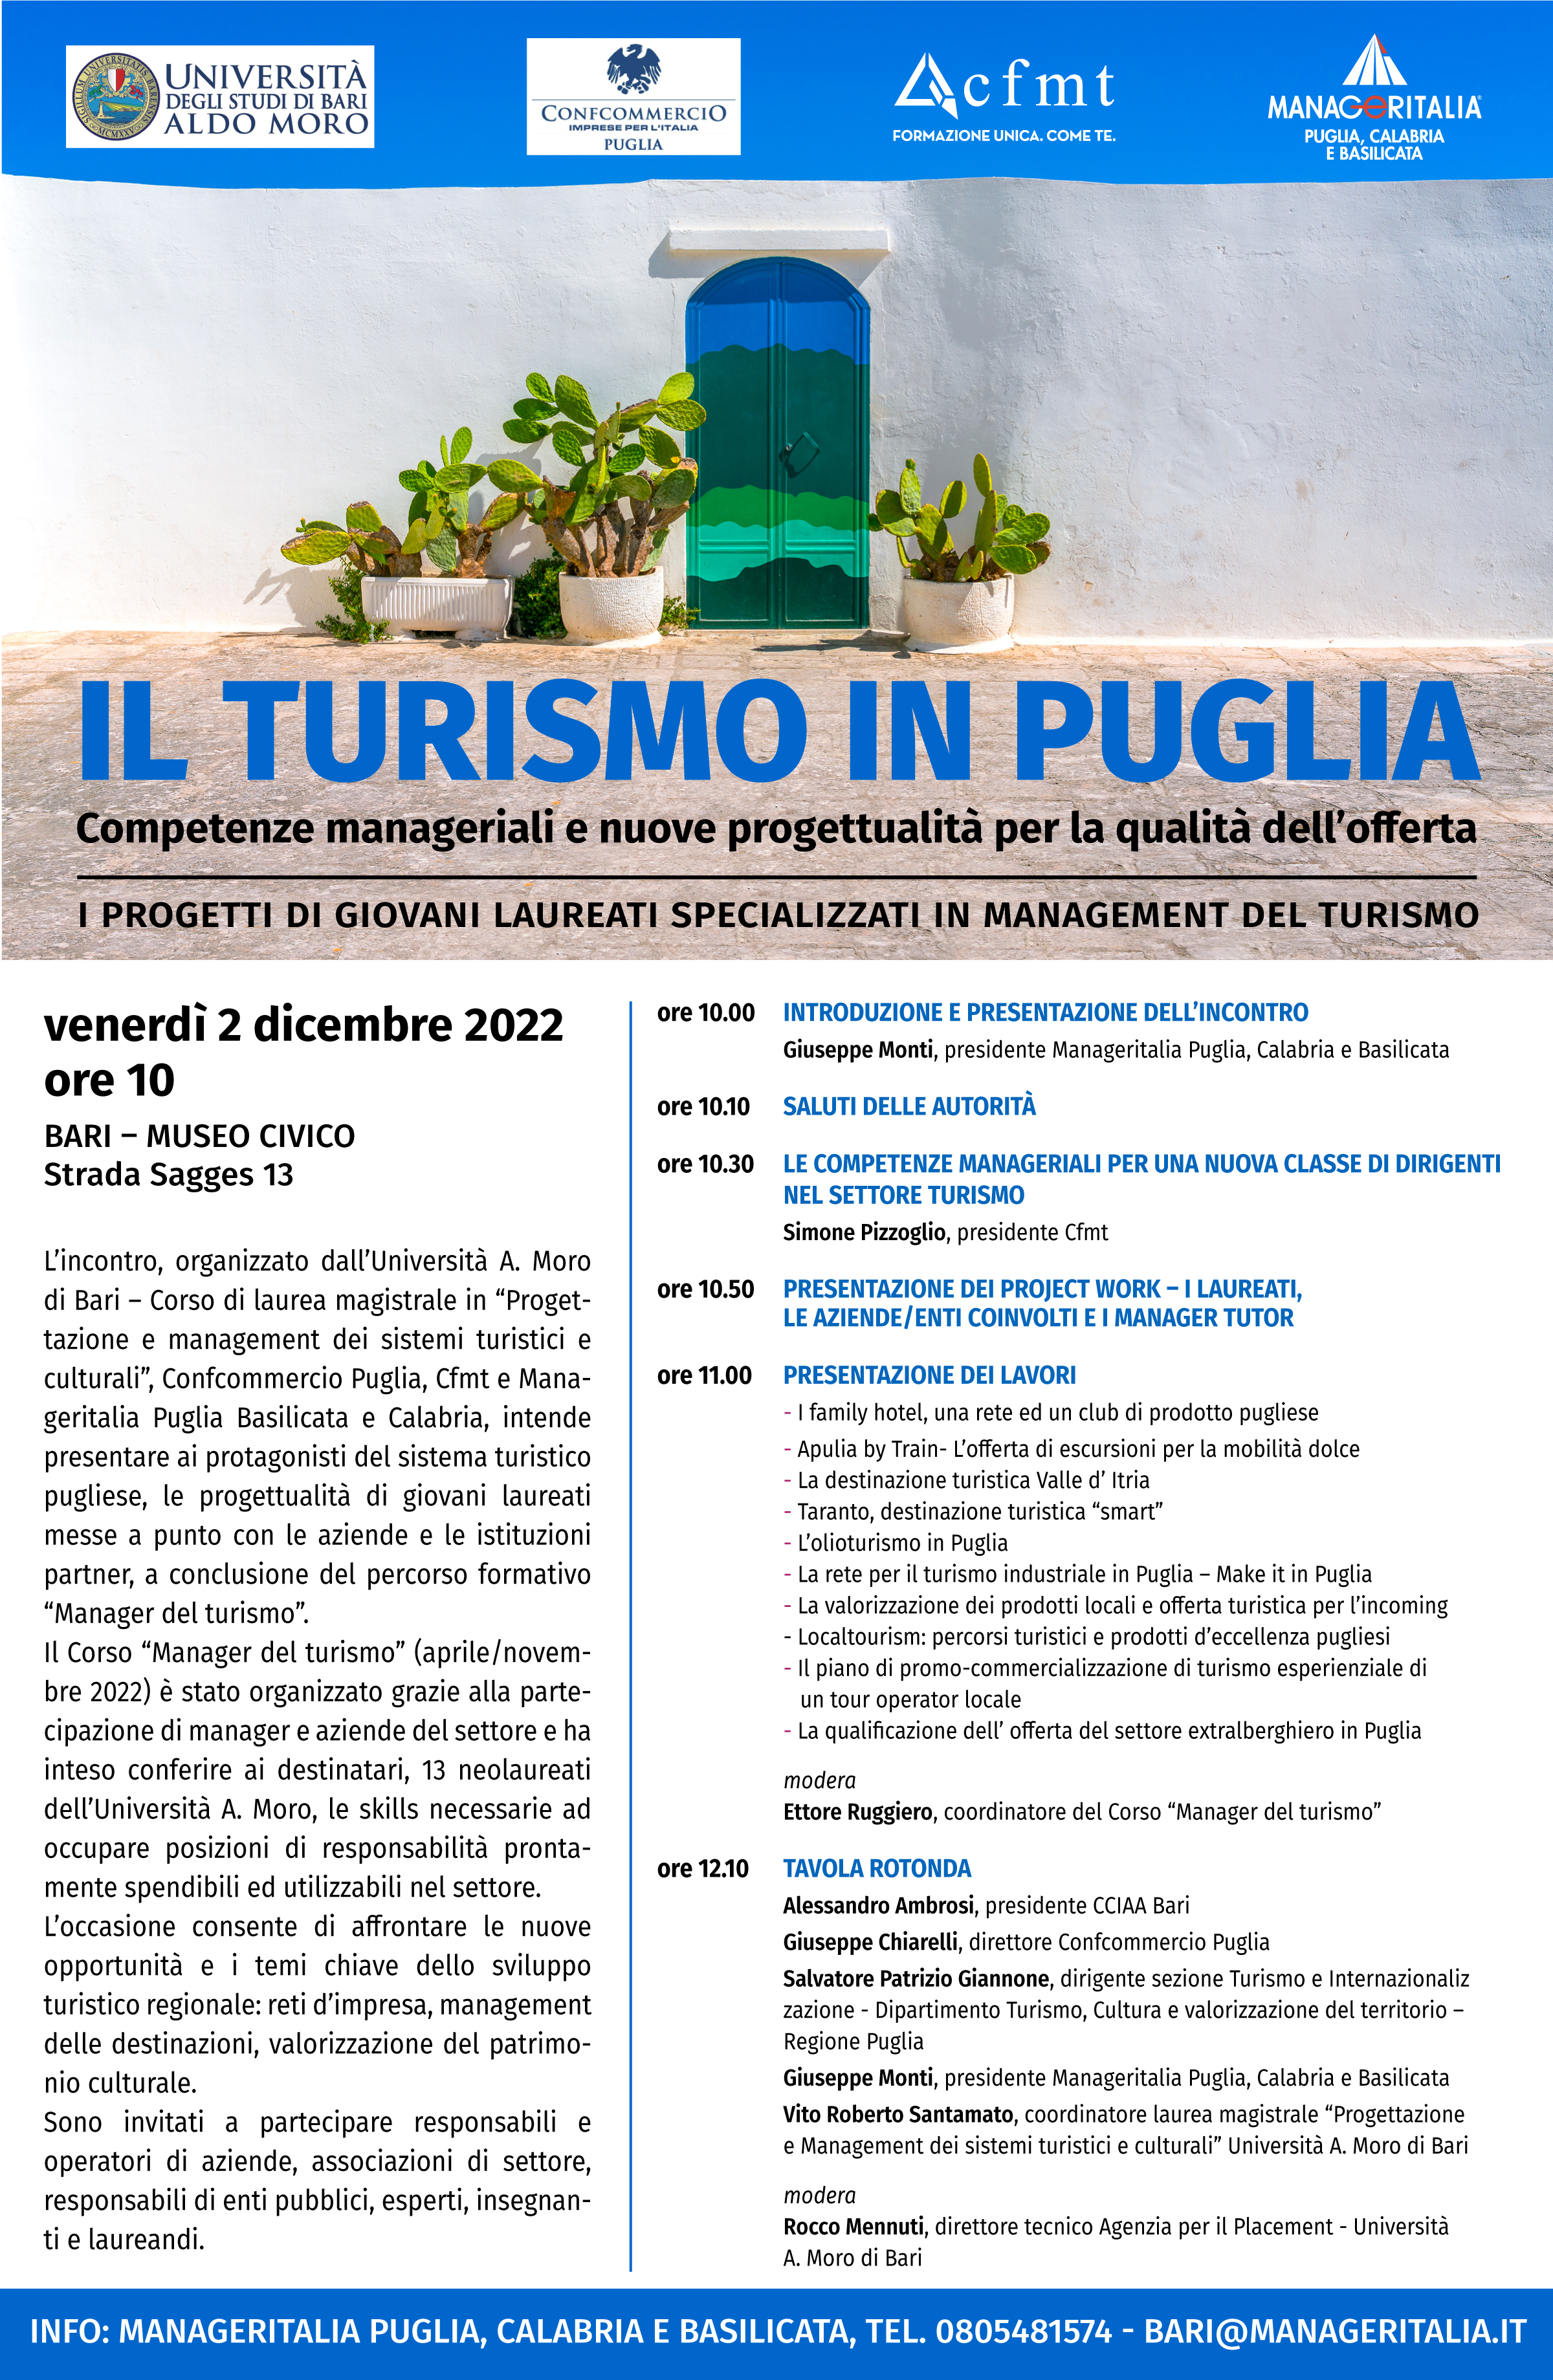 “Il turismo in Puglia: competenze manageriali e nuove progettualità per la qualità dell’offerta”